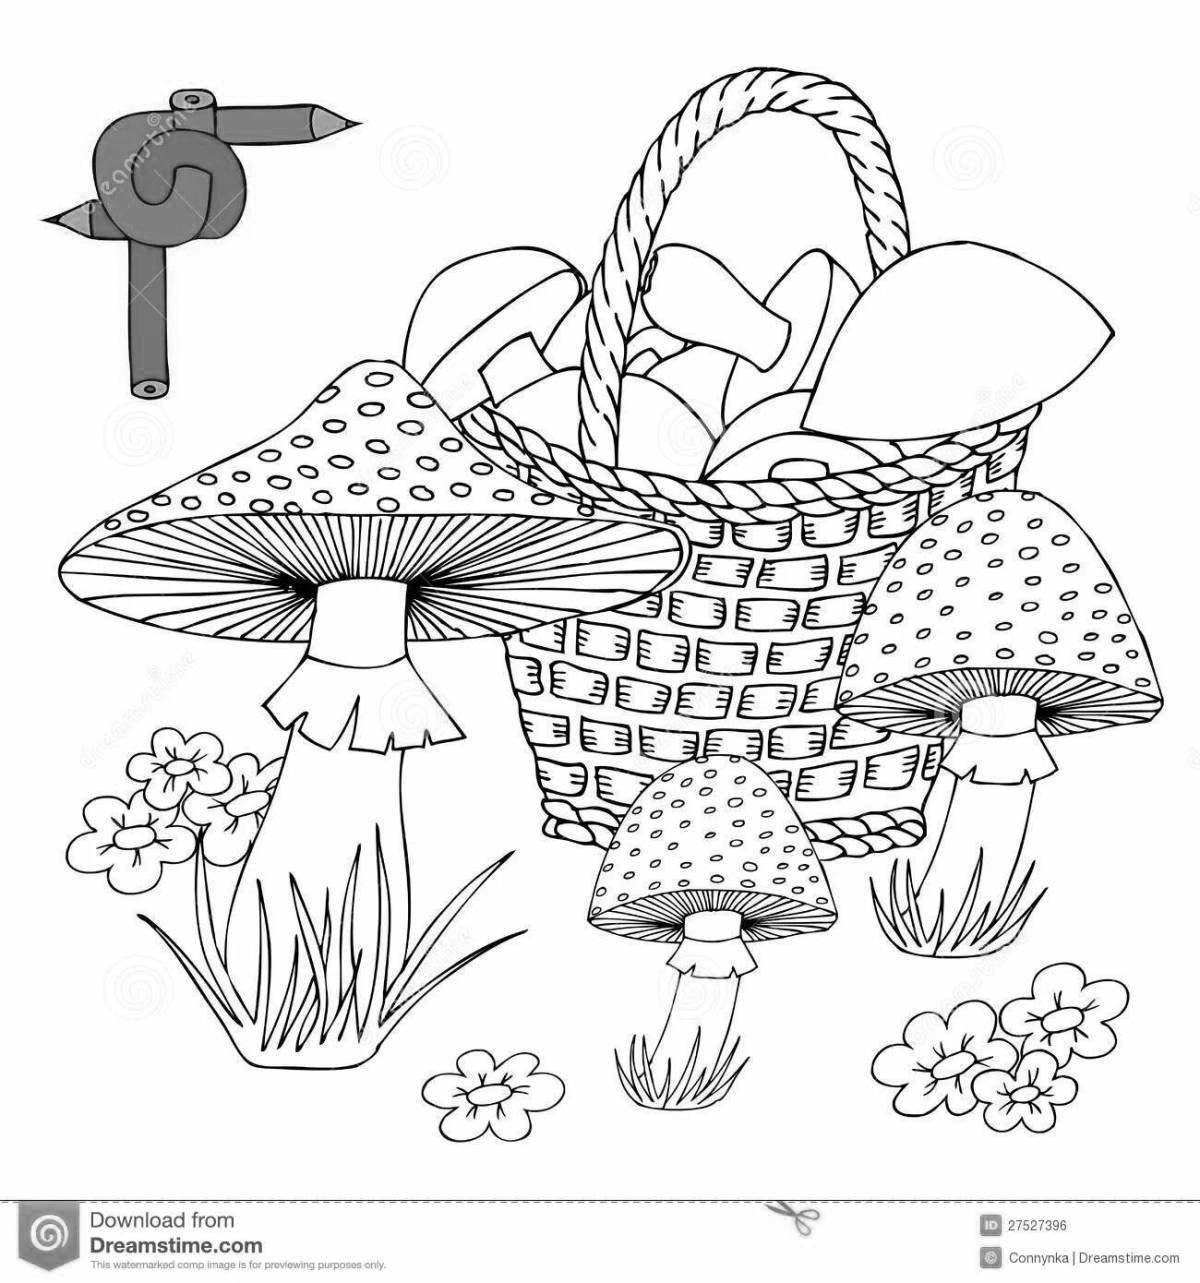 Раскраска очаровательная корзинка с грибами